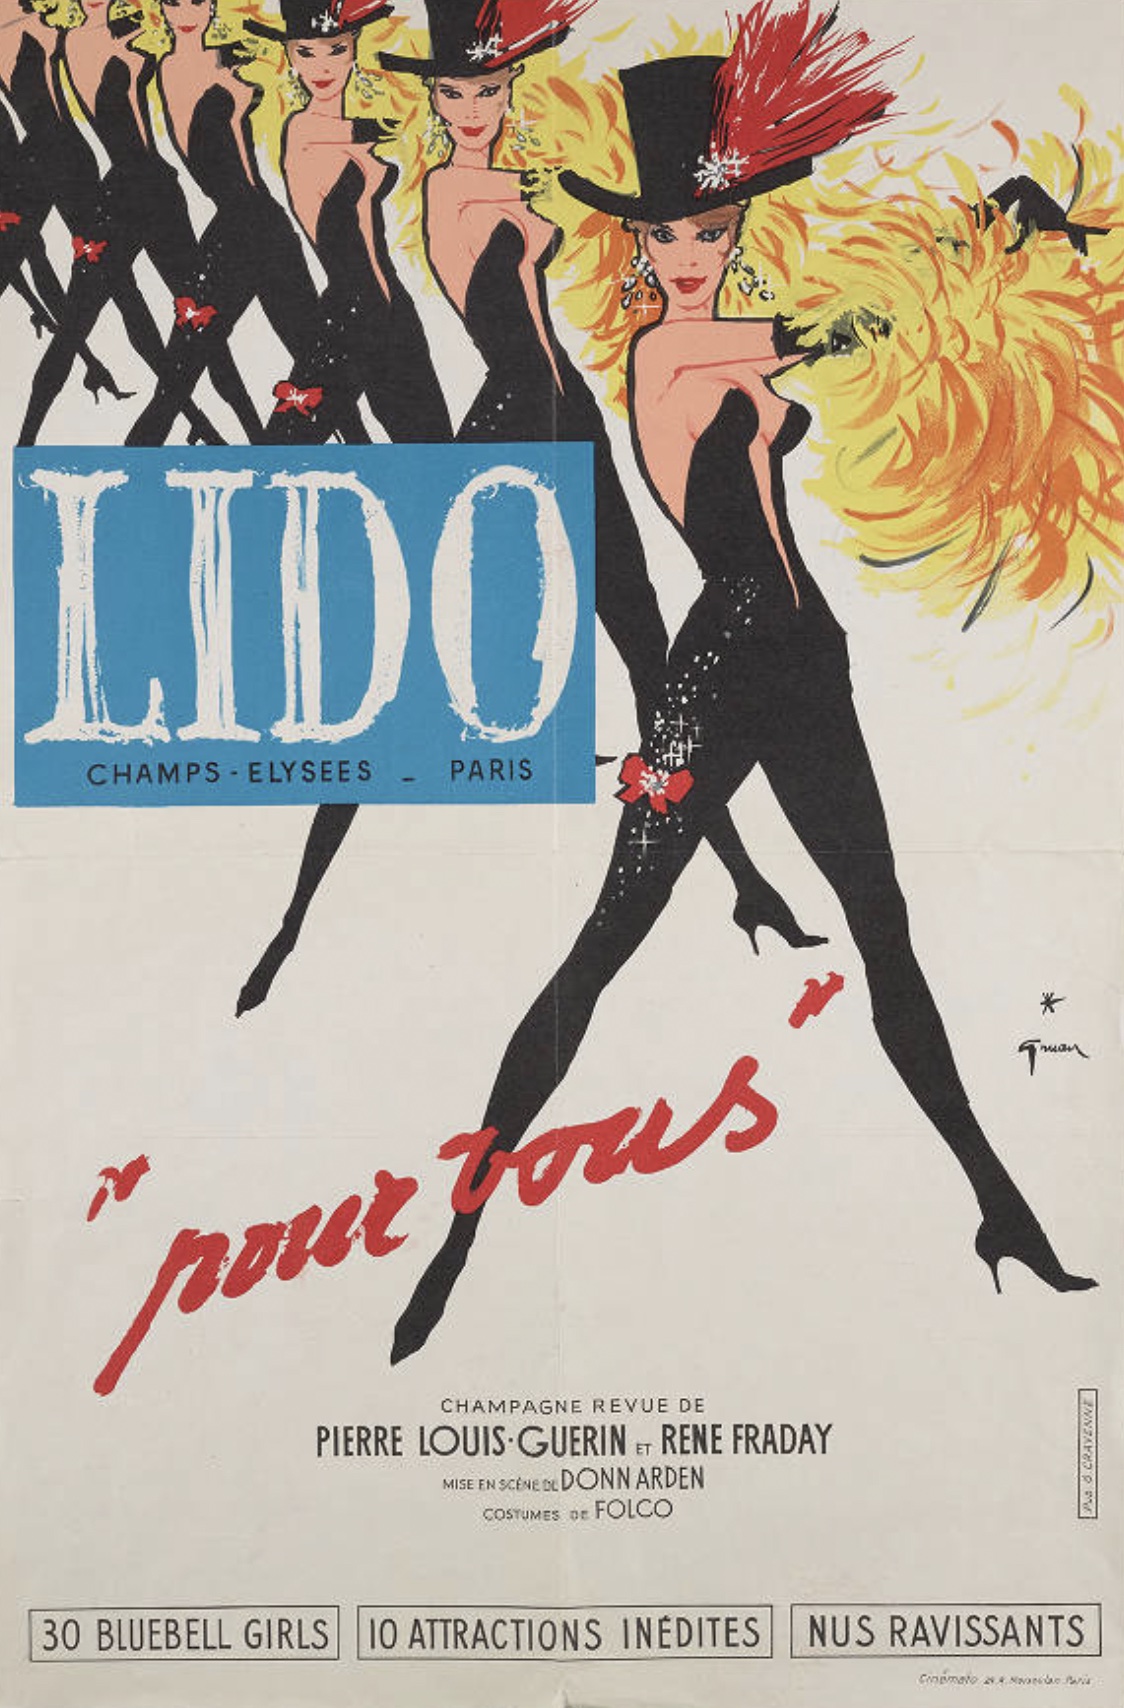 Lido "Pour vous" Original Vintage Poster